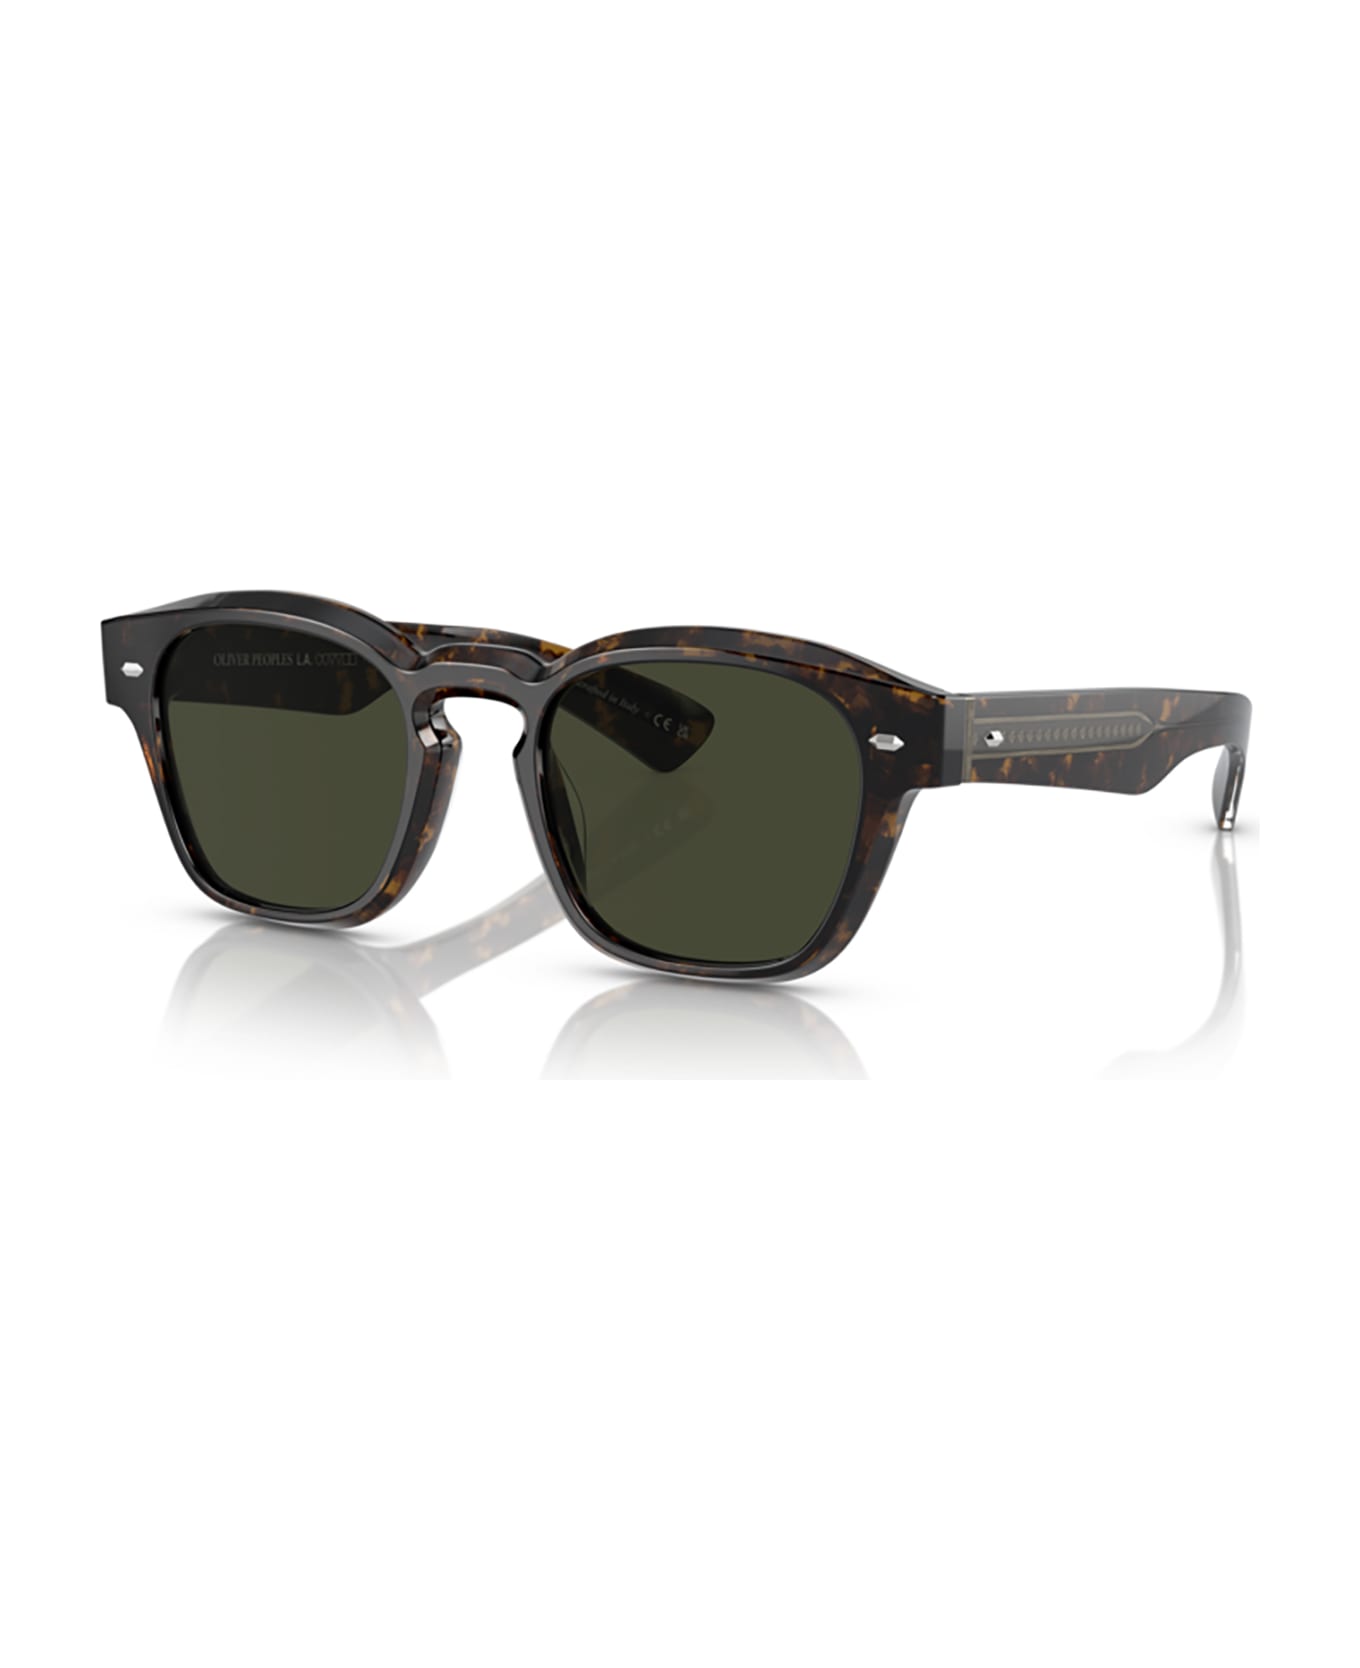 Oliver Peoples Ov5521su Walnut Tortoise Sunglasses - Walnut tortoise サングラス